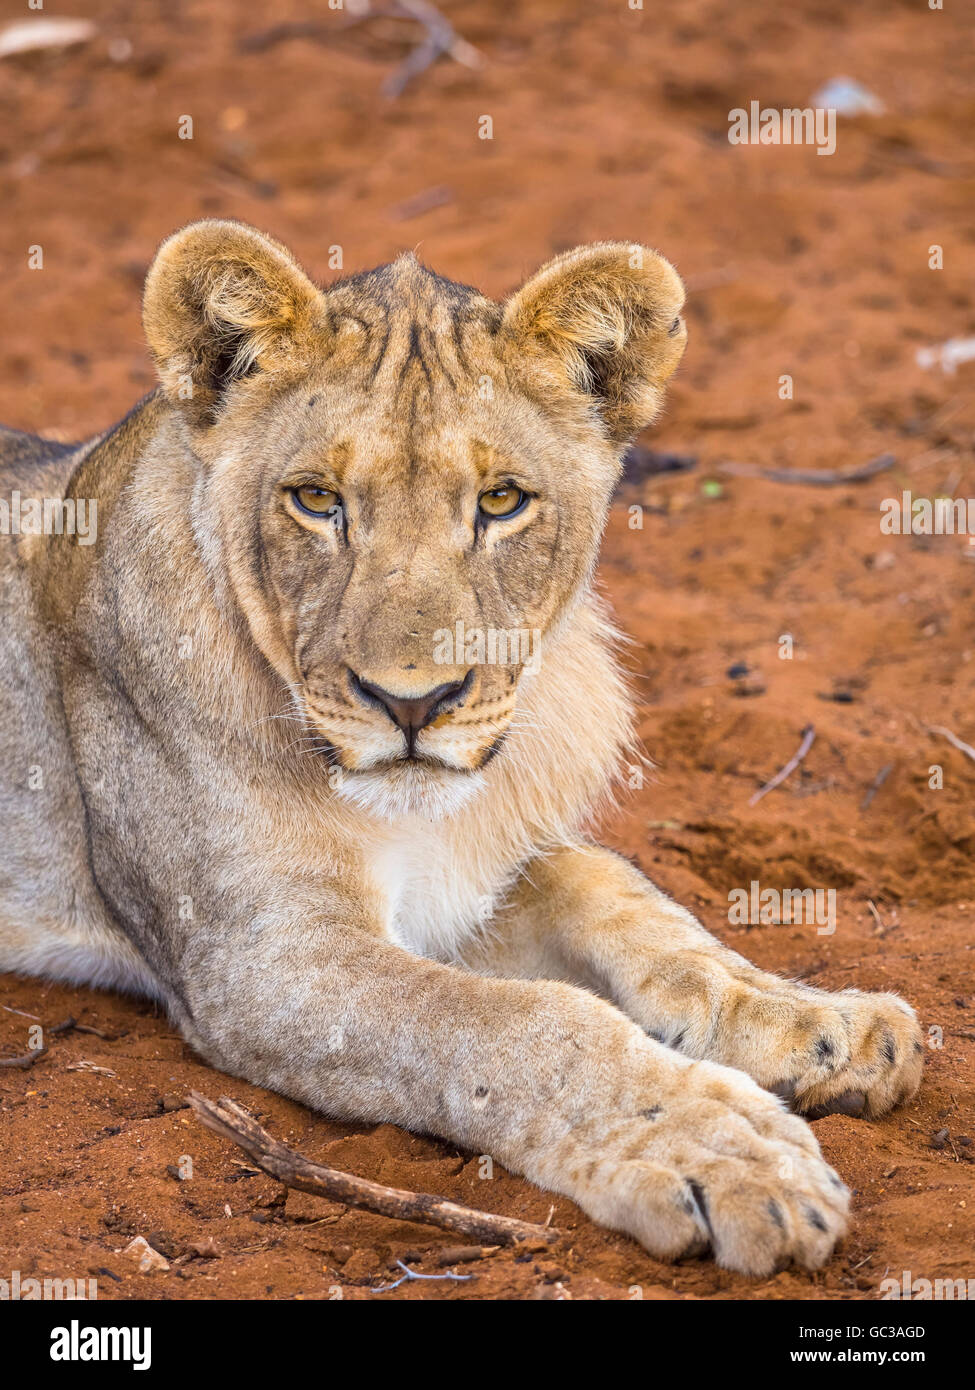 Jeune Lionne (Panthera leo) couchée sur le sol rouge, Okaukuejo, Etosha National Park, Namibie Banque D'Images